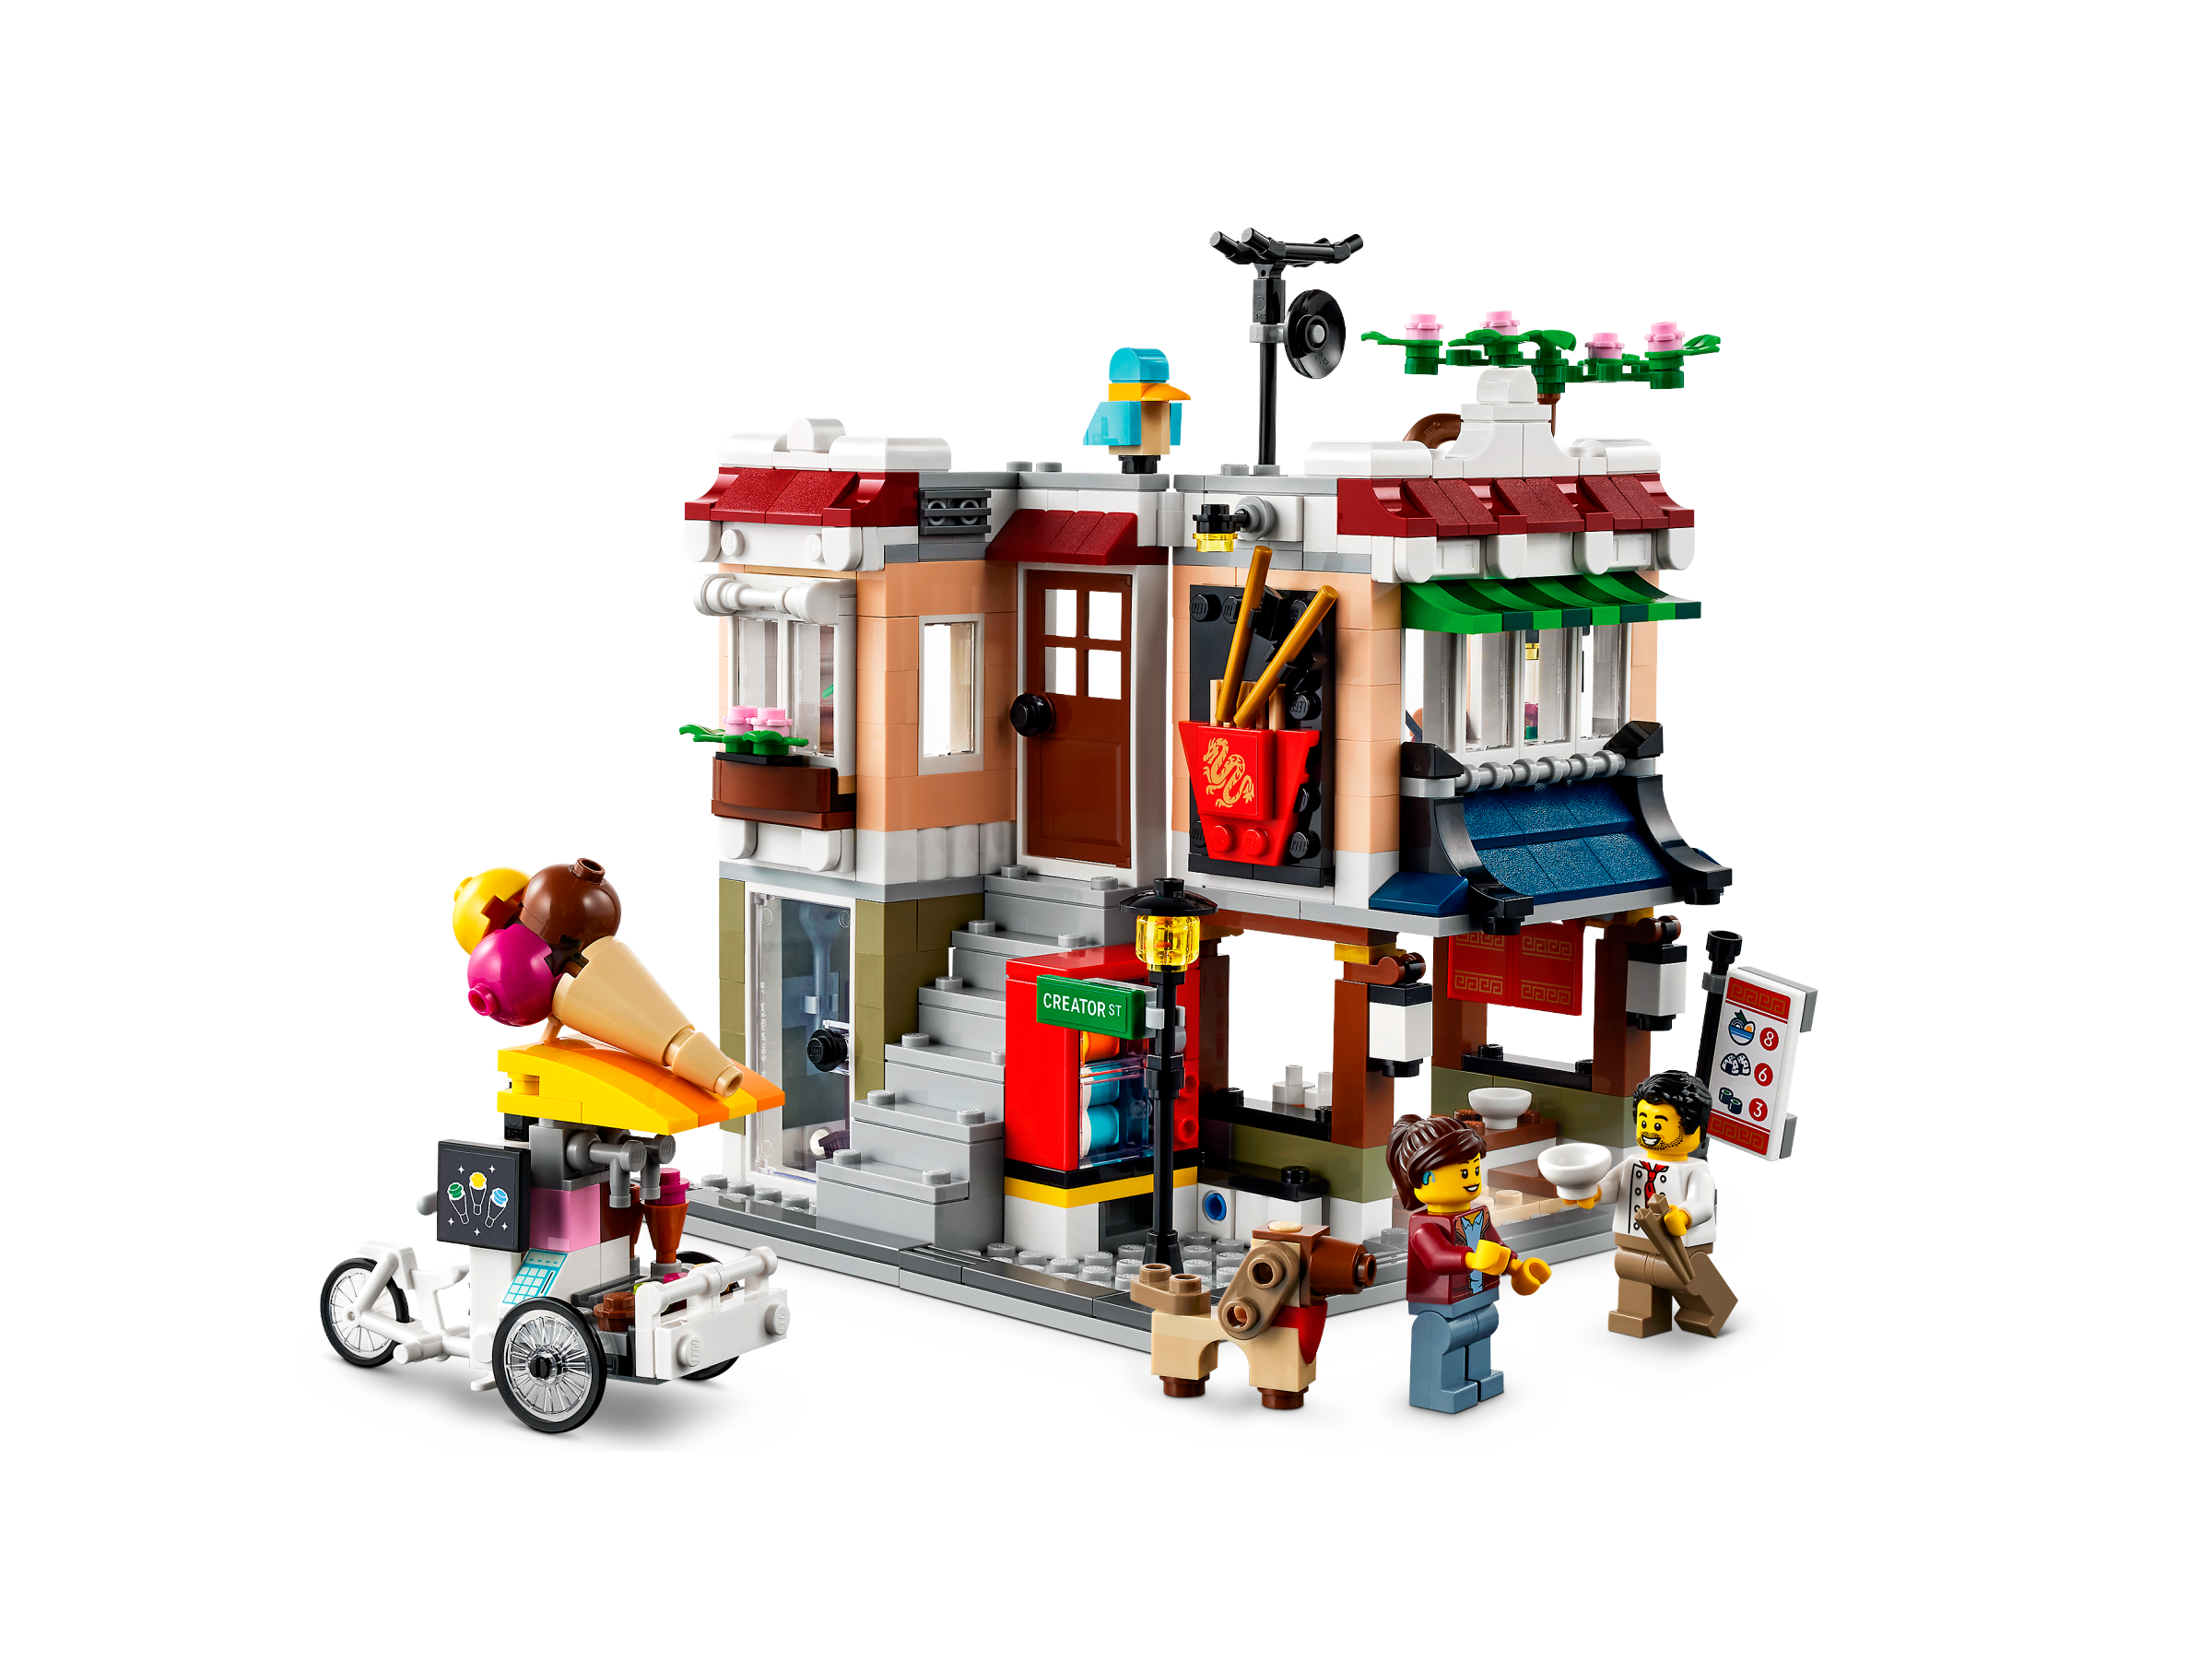 Sinewi hervorming dak Noedelwinkel in de stad 31131 | Creator 3-in-1 | Officiële LEGO® winkel NL